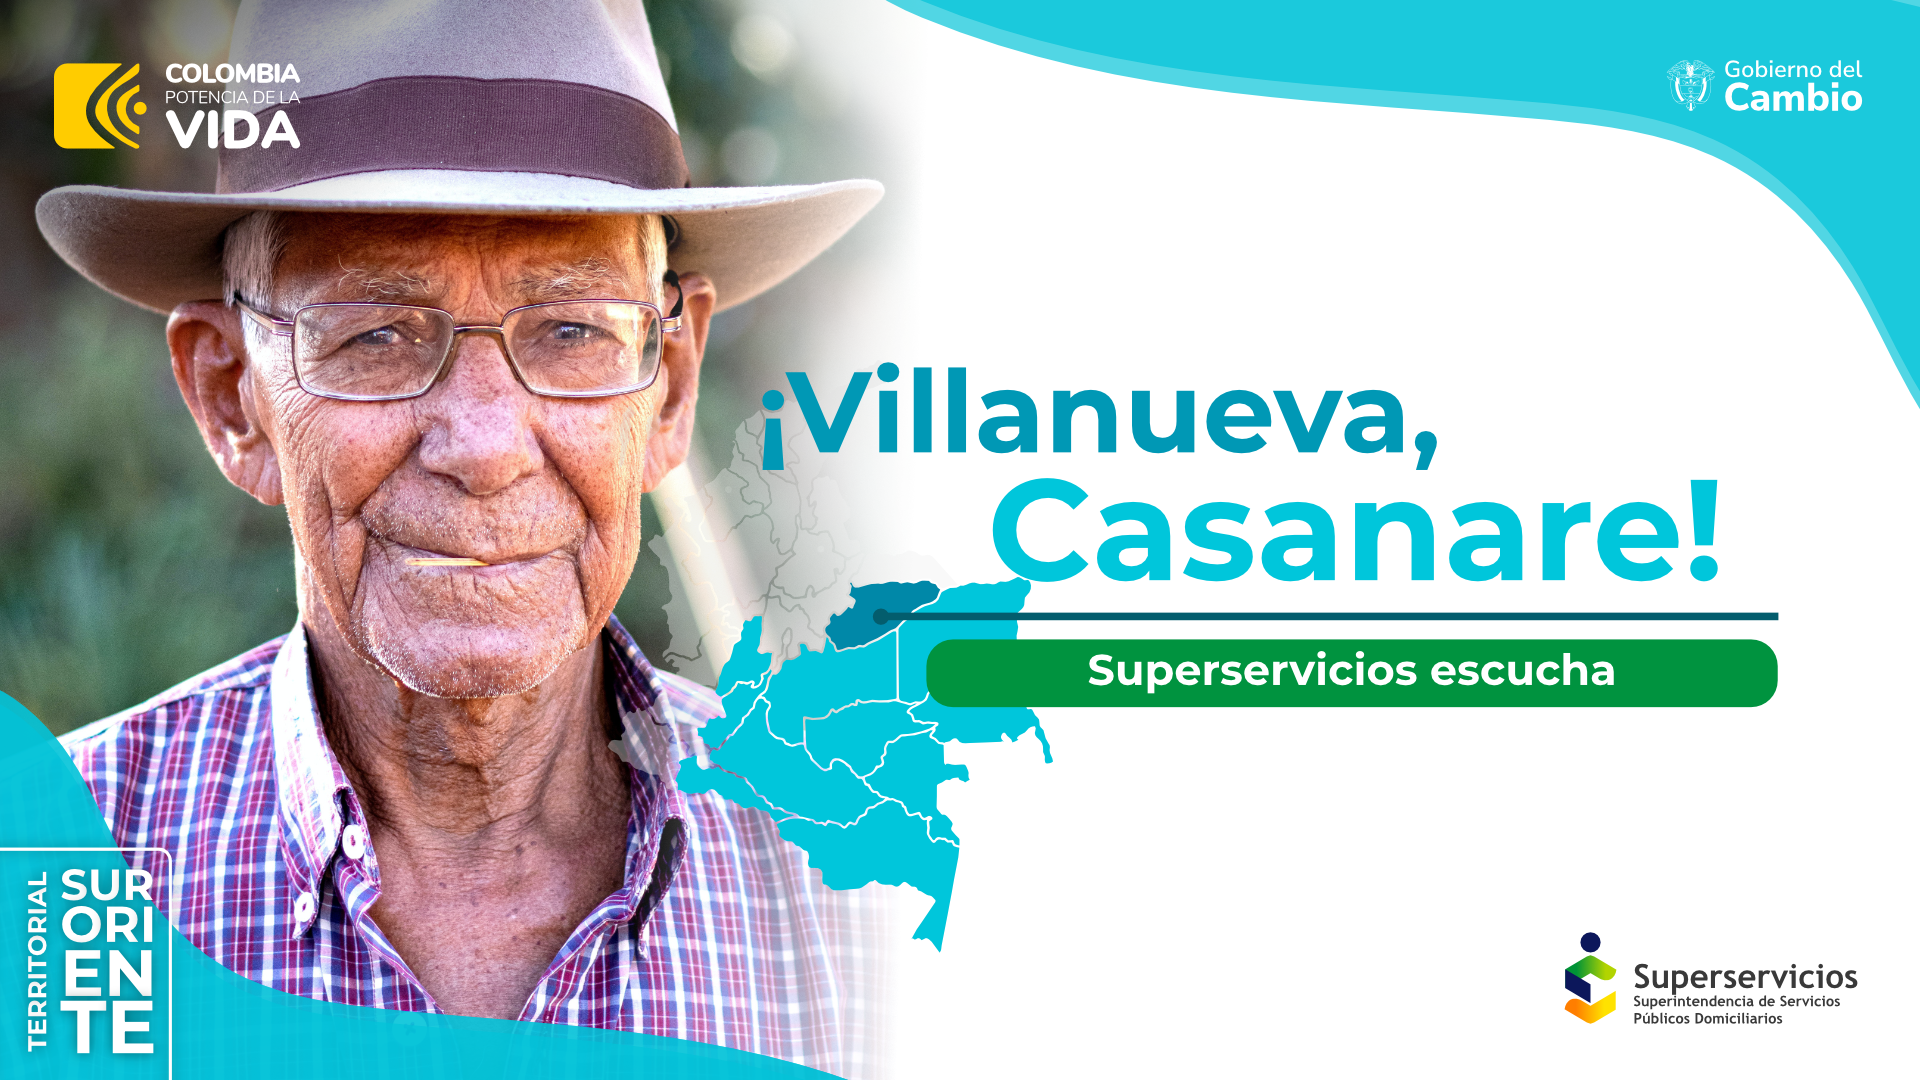 Superservicios escucha en Villanueva, Casanare 
